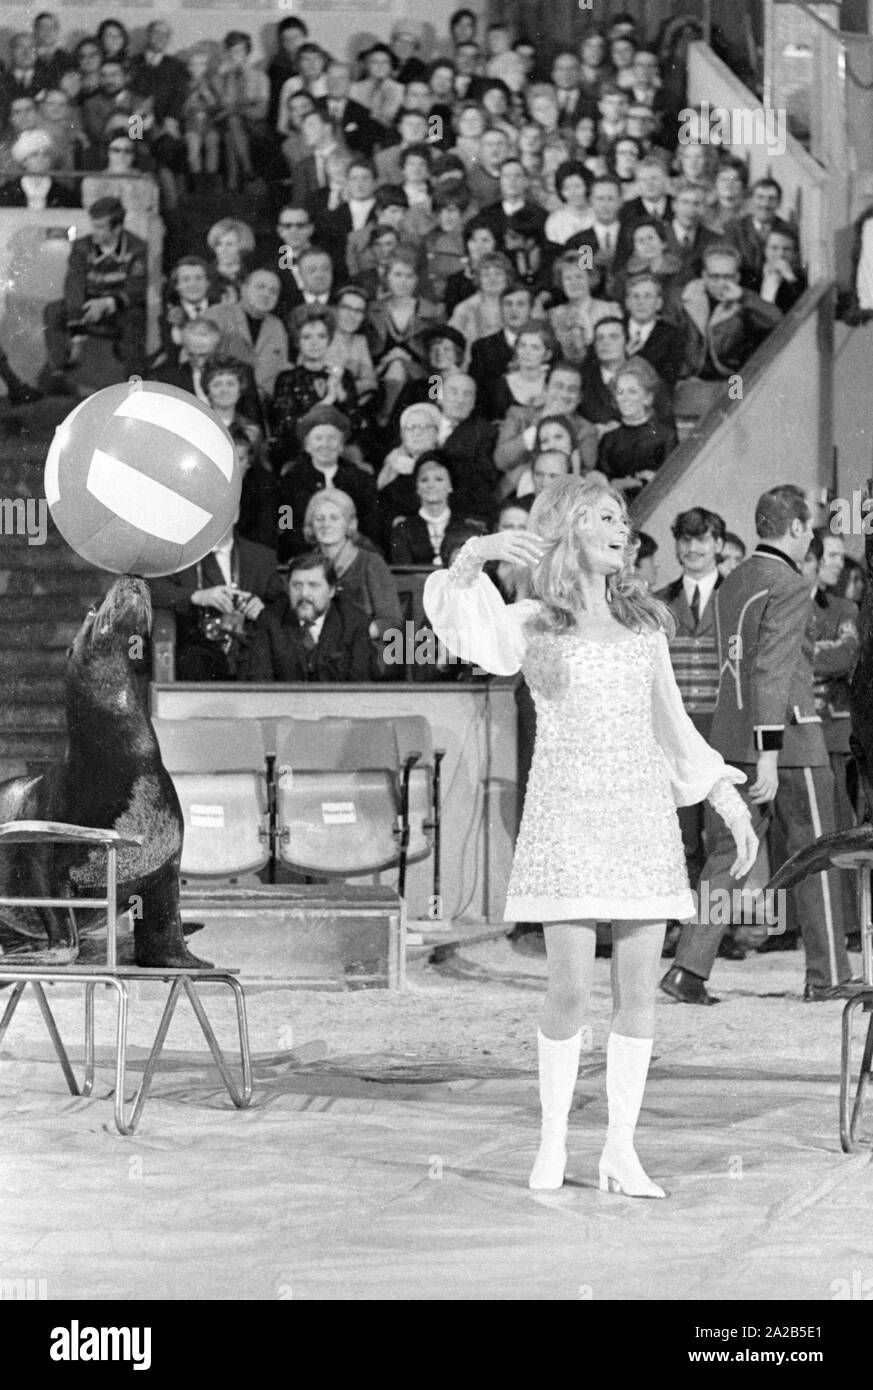 Ein zirkusprogramm wurde jährlich von Berühmtheiten vor Publikum für die TV-Show 'Die Goldene A Perfect Solution" bei Circus Krone in München statt. Foto einer Frau in Weiß während einer Performance mit Seelöwen gekleidet. Sie ist wahrscheinlich Vivi Bach. Stockfoto